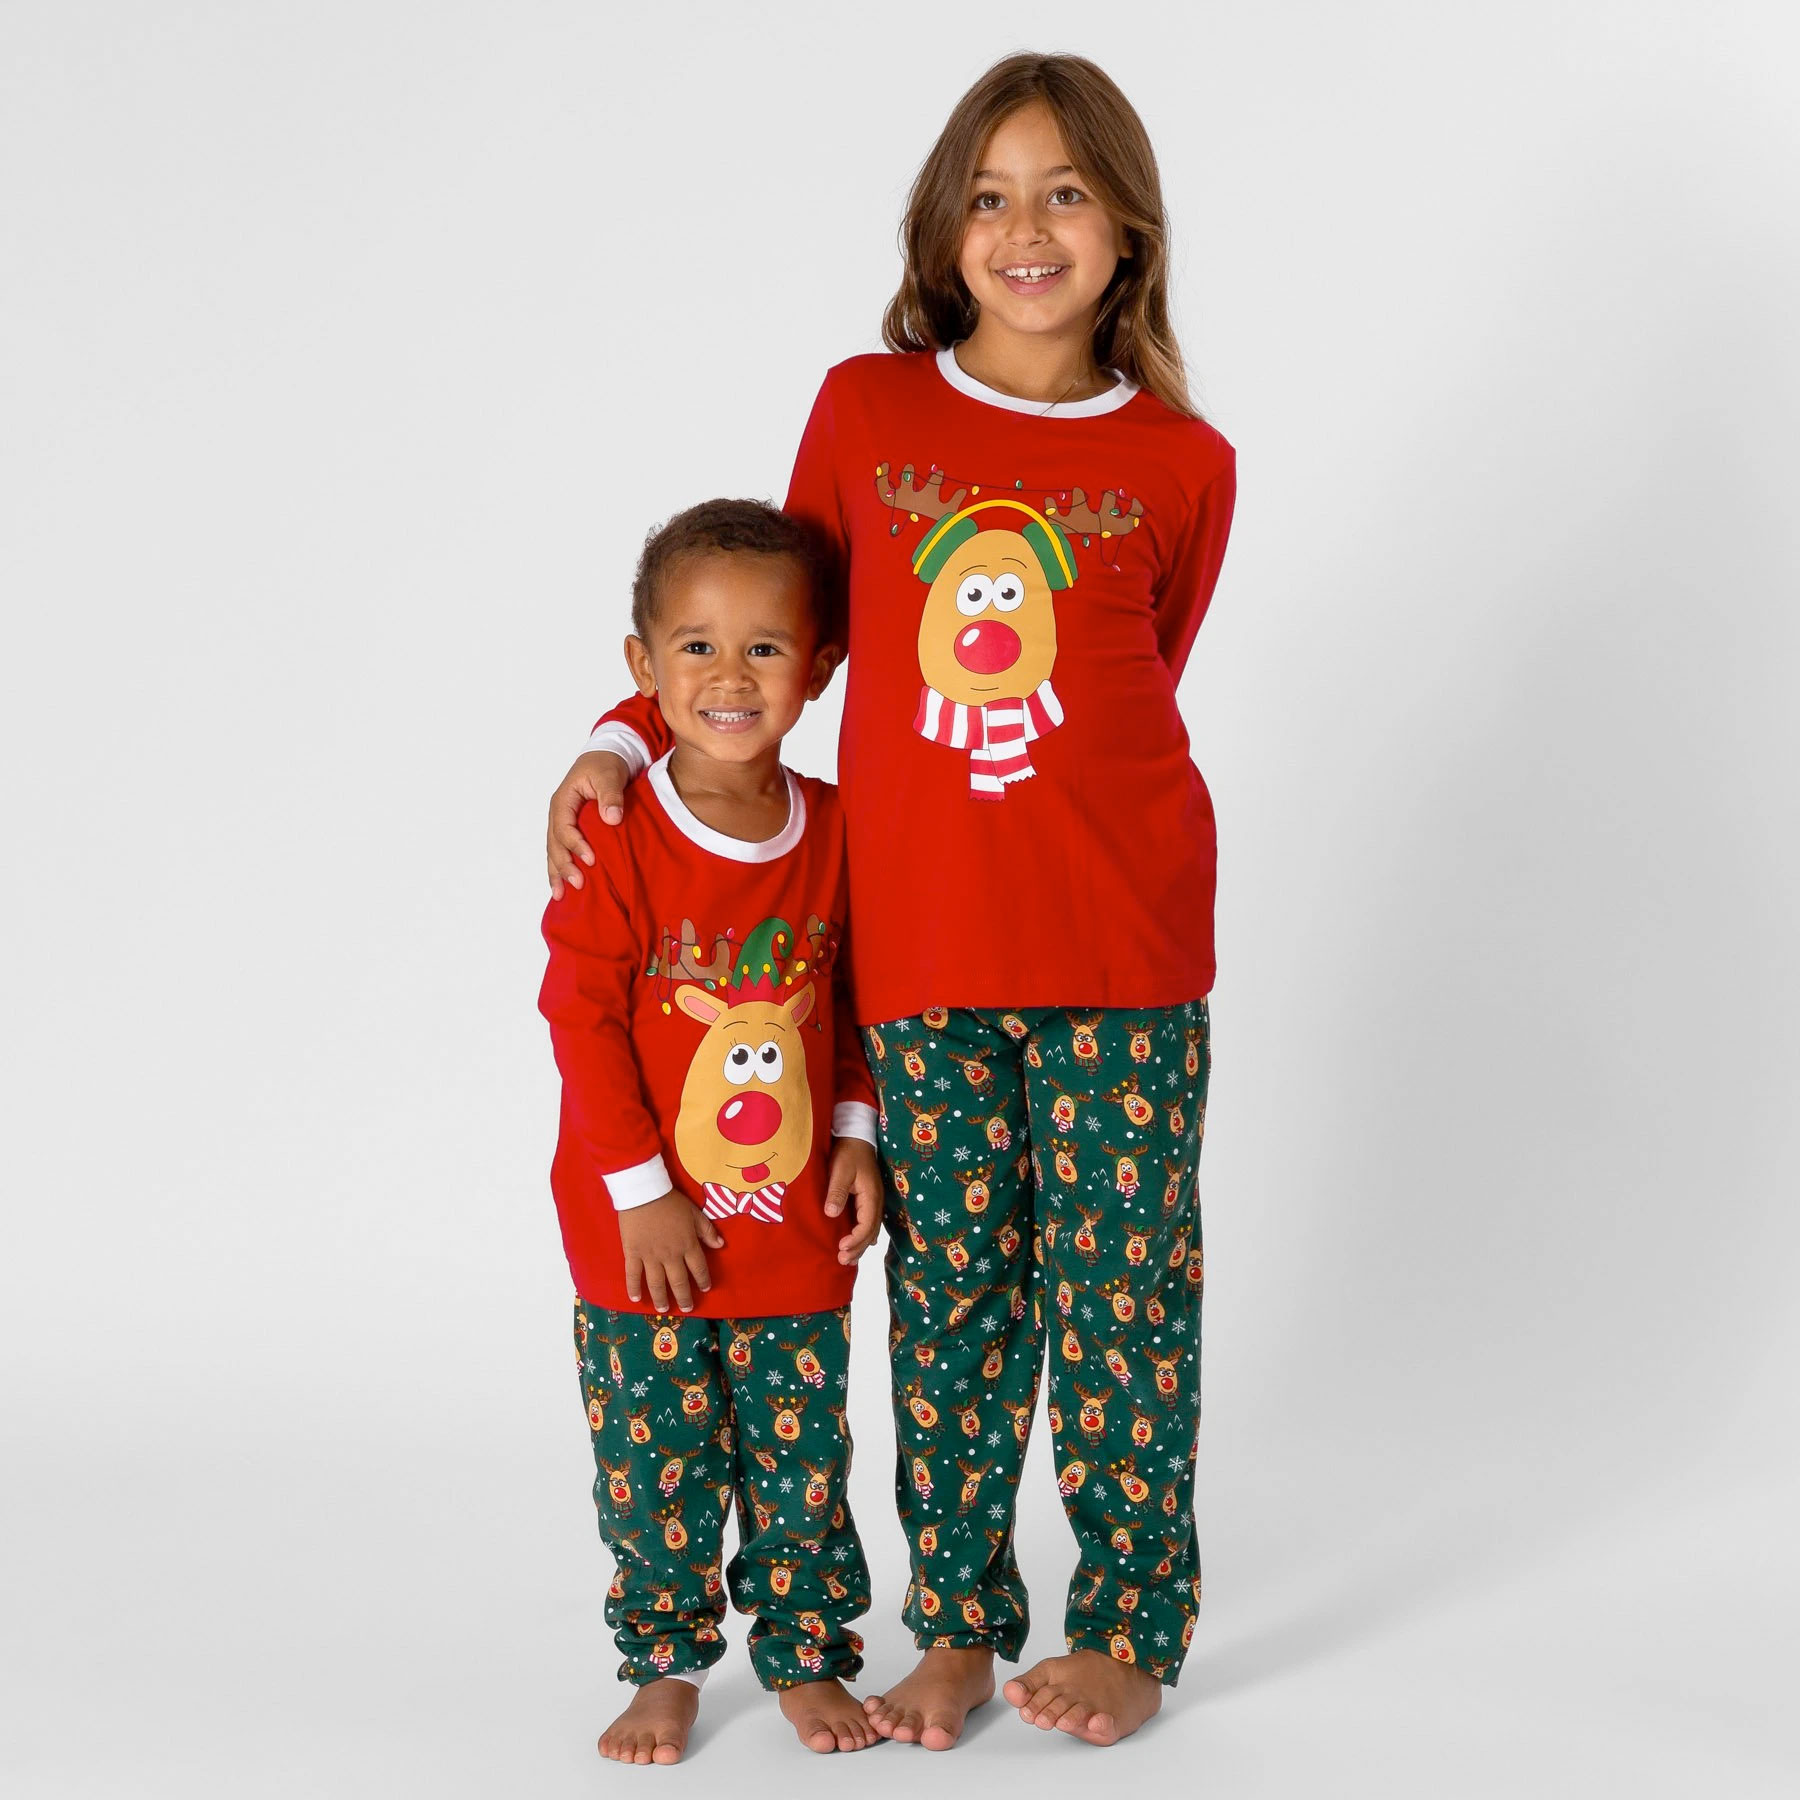 Bij zonsopgang reactie Met bloed bevlekt Kerst Pyjama Kinderen (1-6 jaar) - Rendier - Rood/Groen - KersttruiWinkel.nl